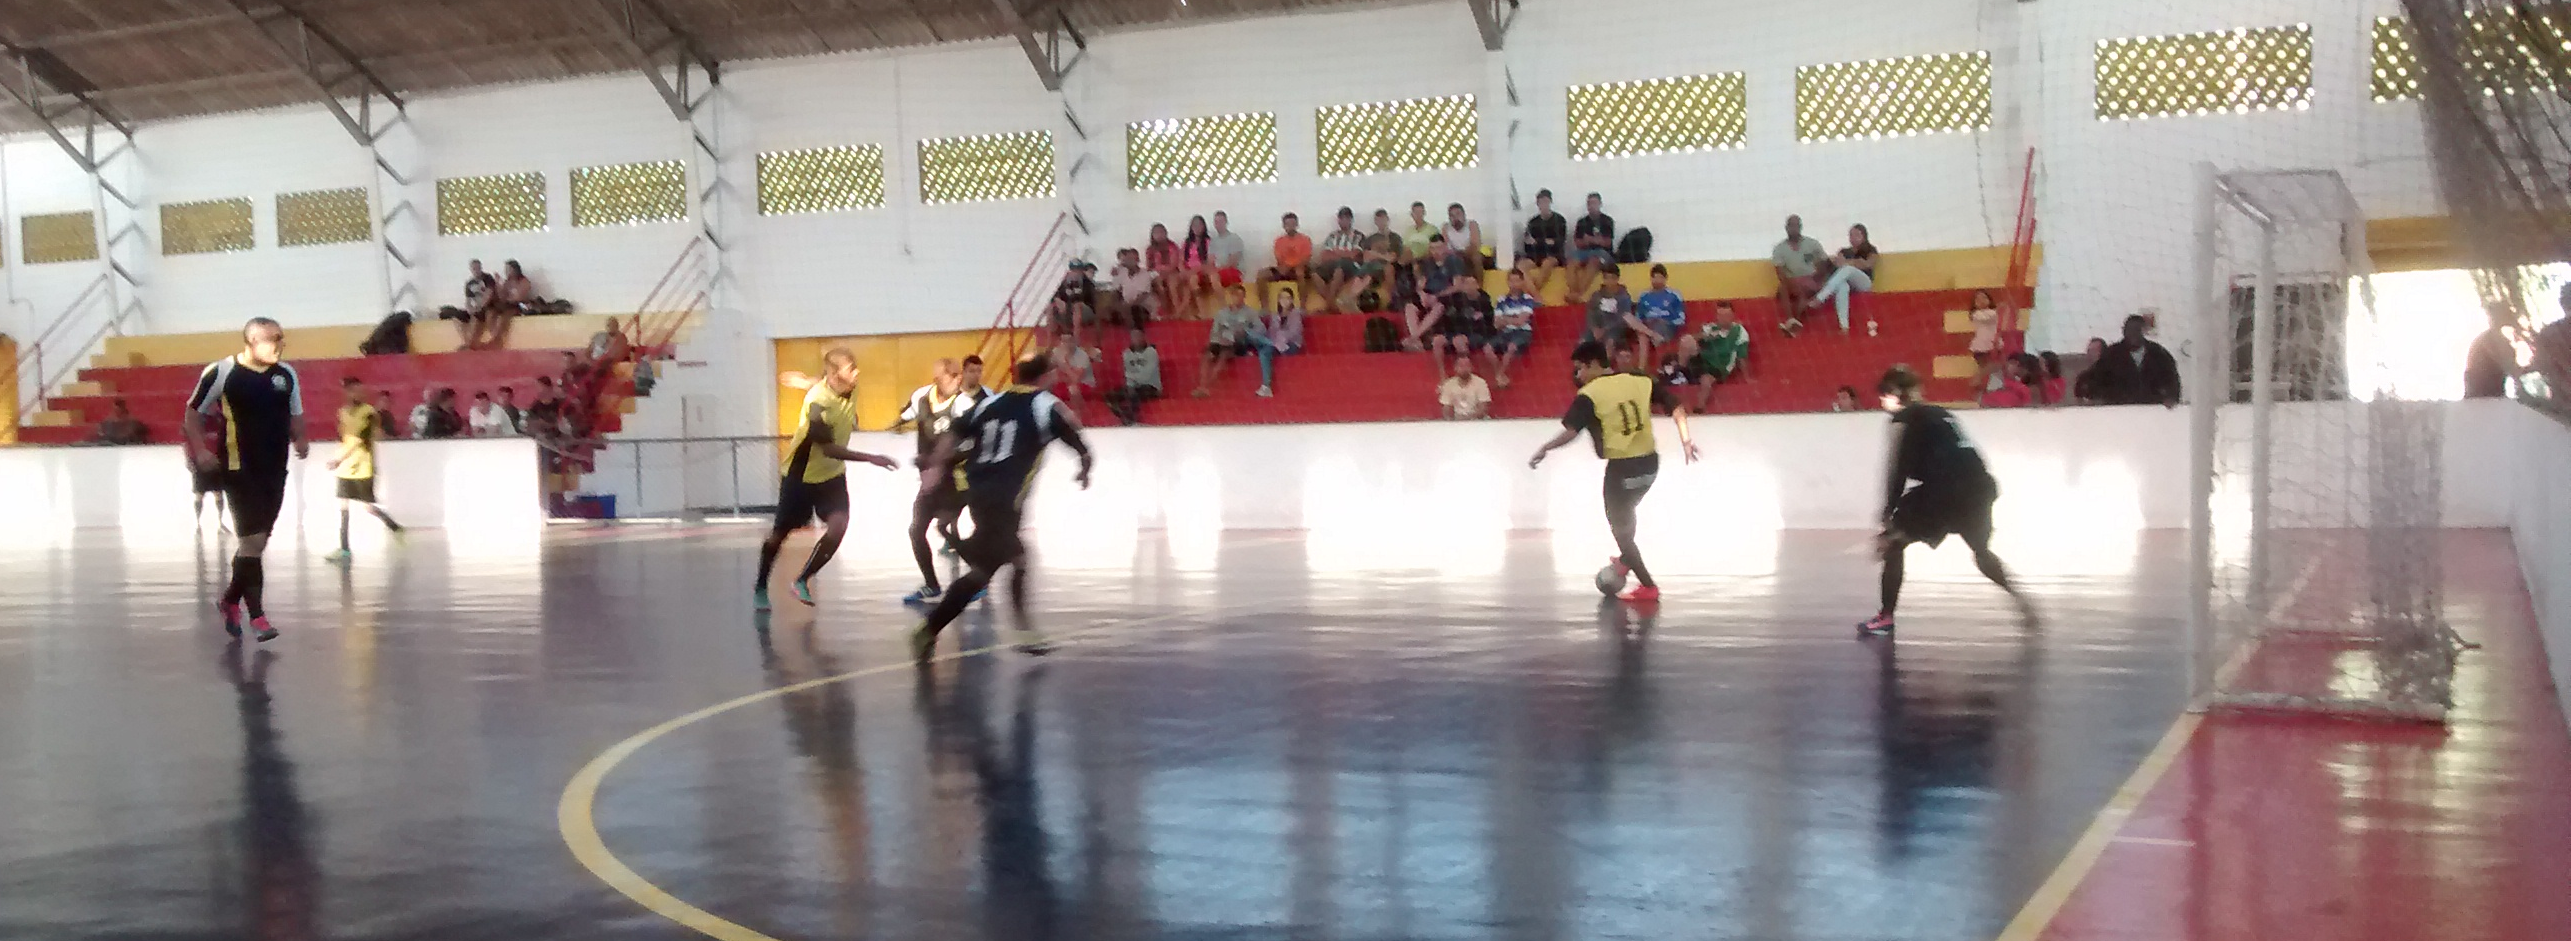 Início do 4º Torneio Regional de Futsal Seaac de Santos